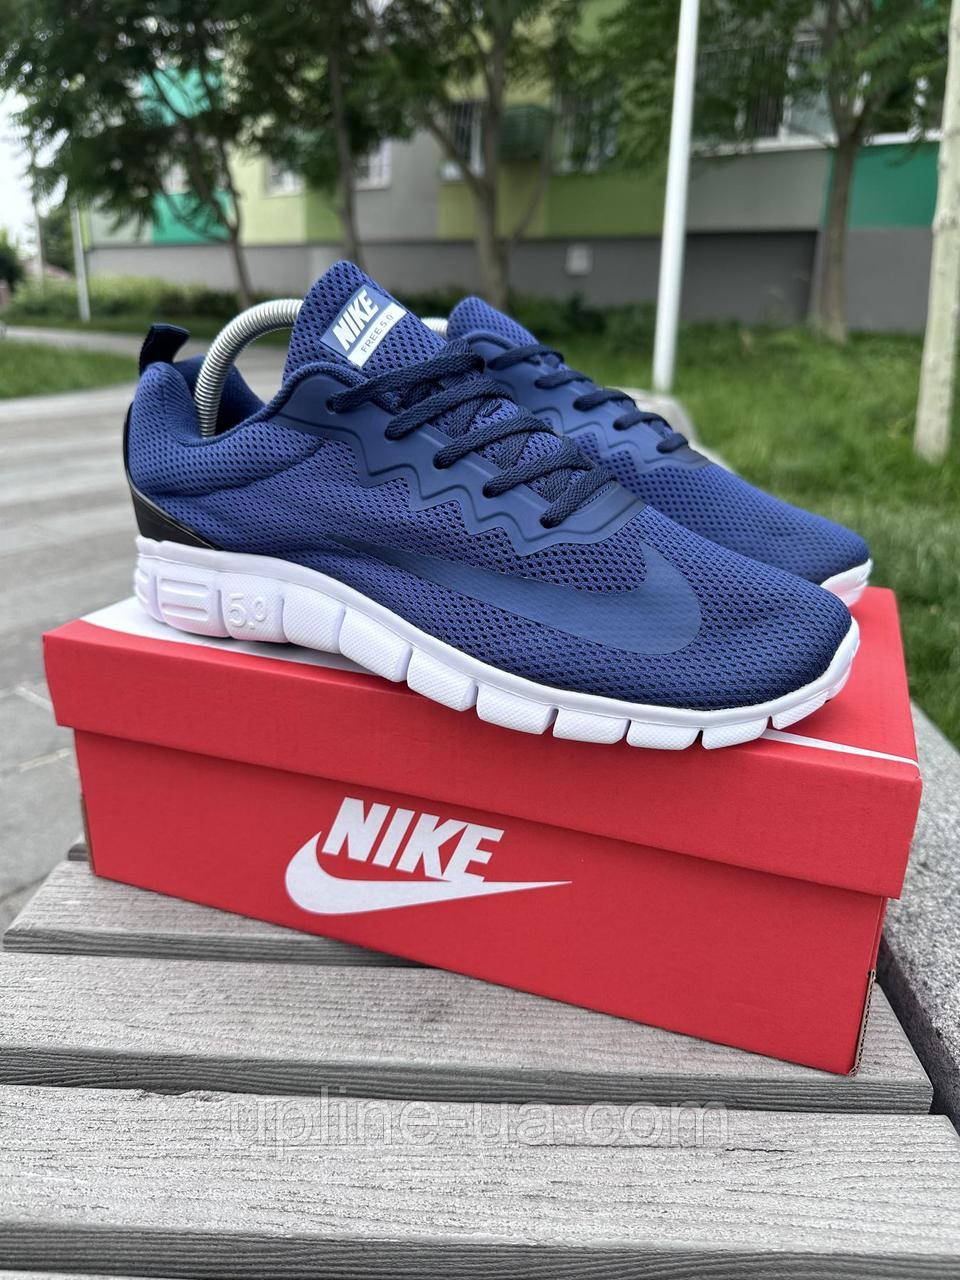 Купить Кросівки Nike Free Run 5.0 (Blue), цена 1140 ₴ — Prom.ua  (ID#1870031412)